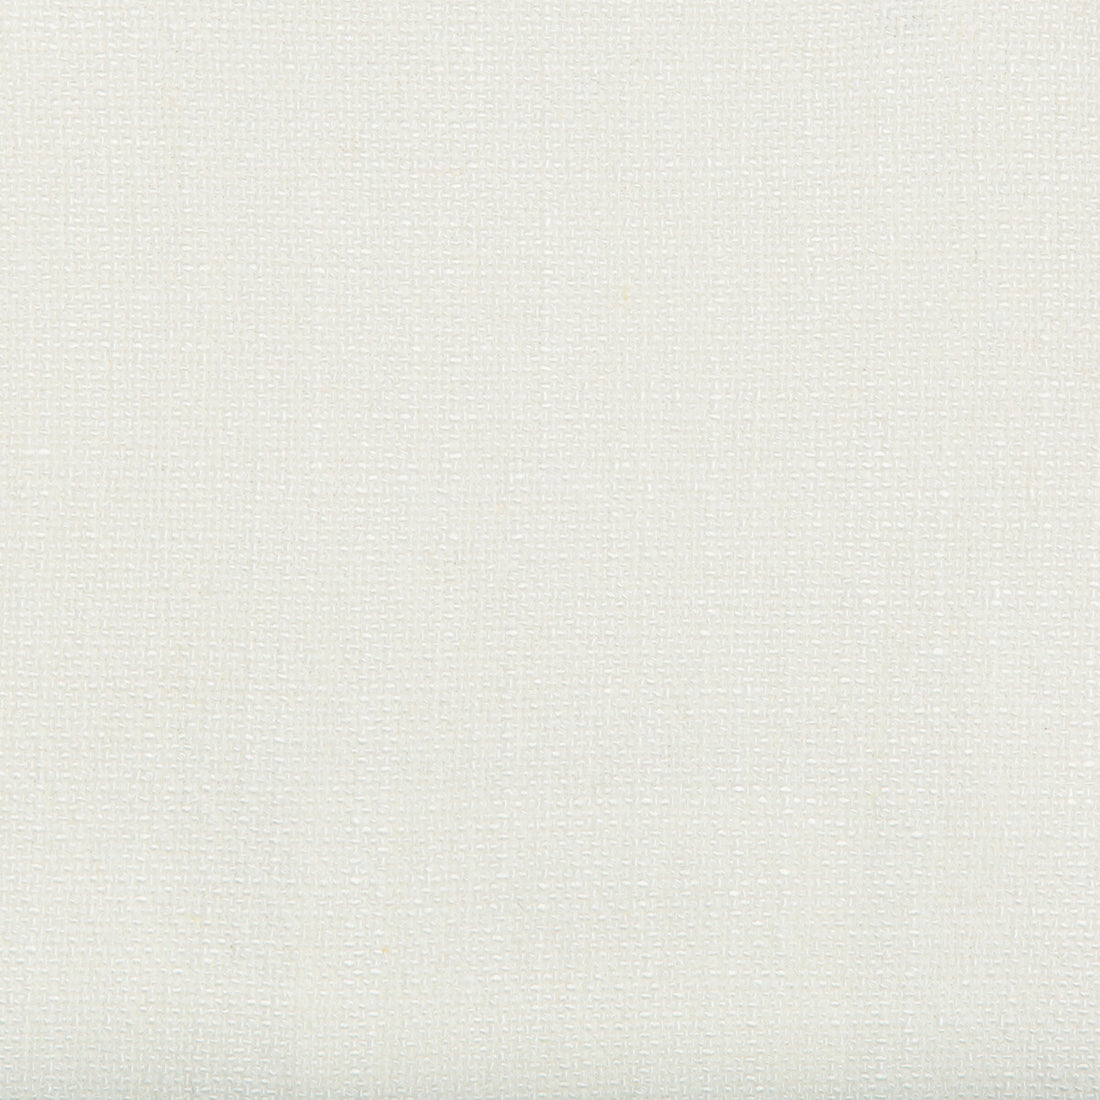 Kravet Basics fabric in 35189-1 color - pattern 35189.1.0 - by Kravet Basics